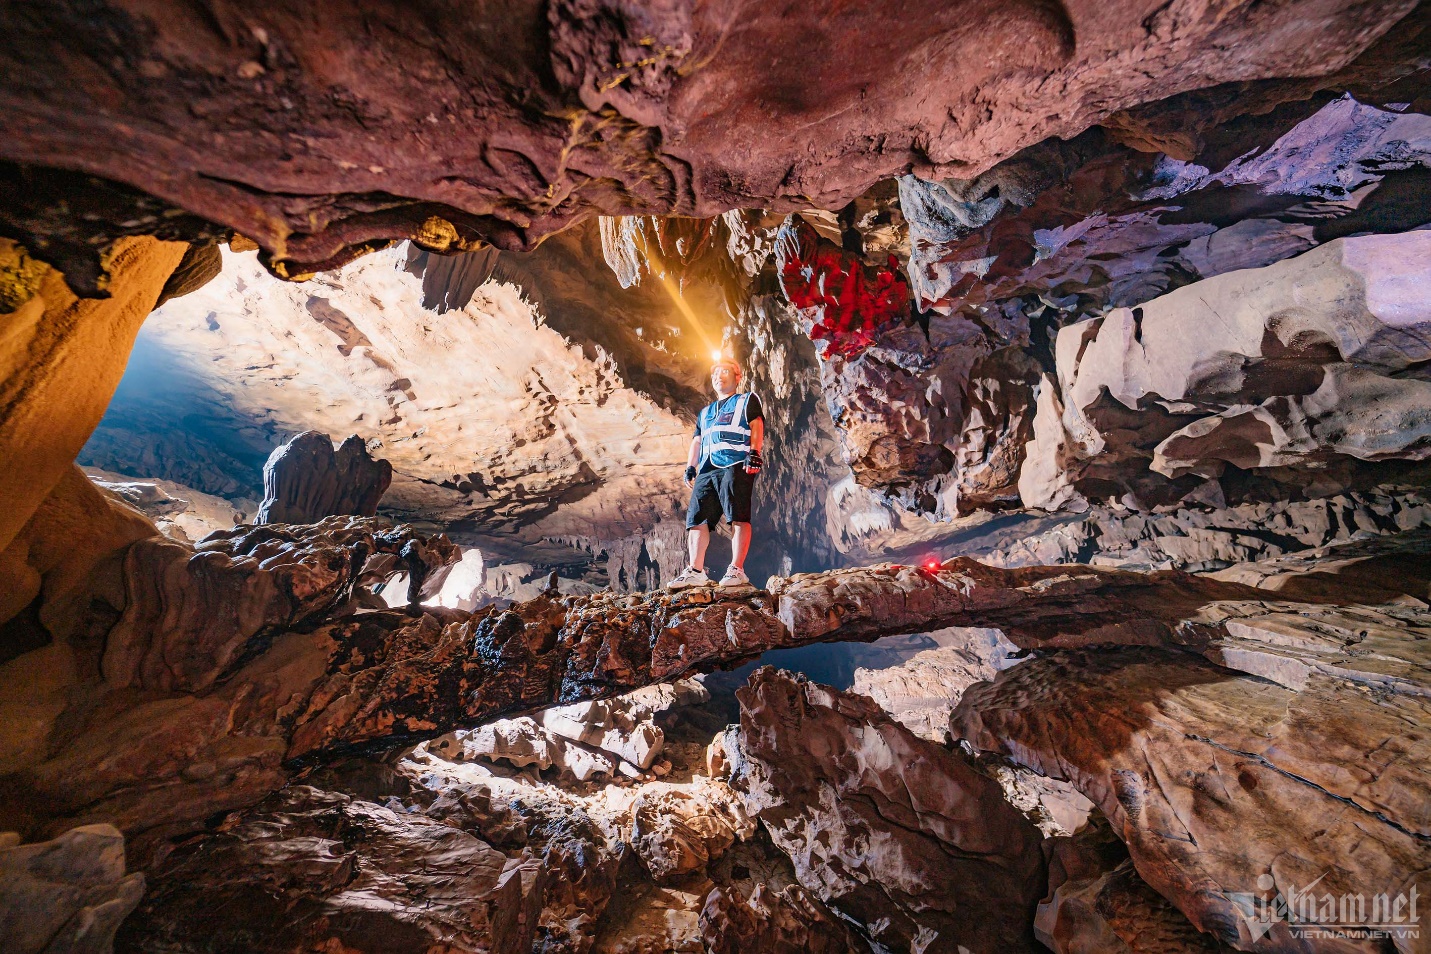 Ngắm nghìn thạch nhũ lạ mắt trong hang Bó Mỳ, điểm đến mới tuyệt đẹp ở Hà Giang - 2